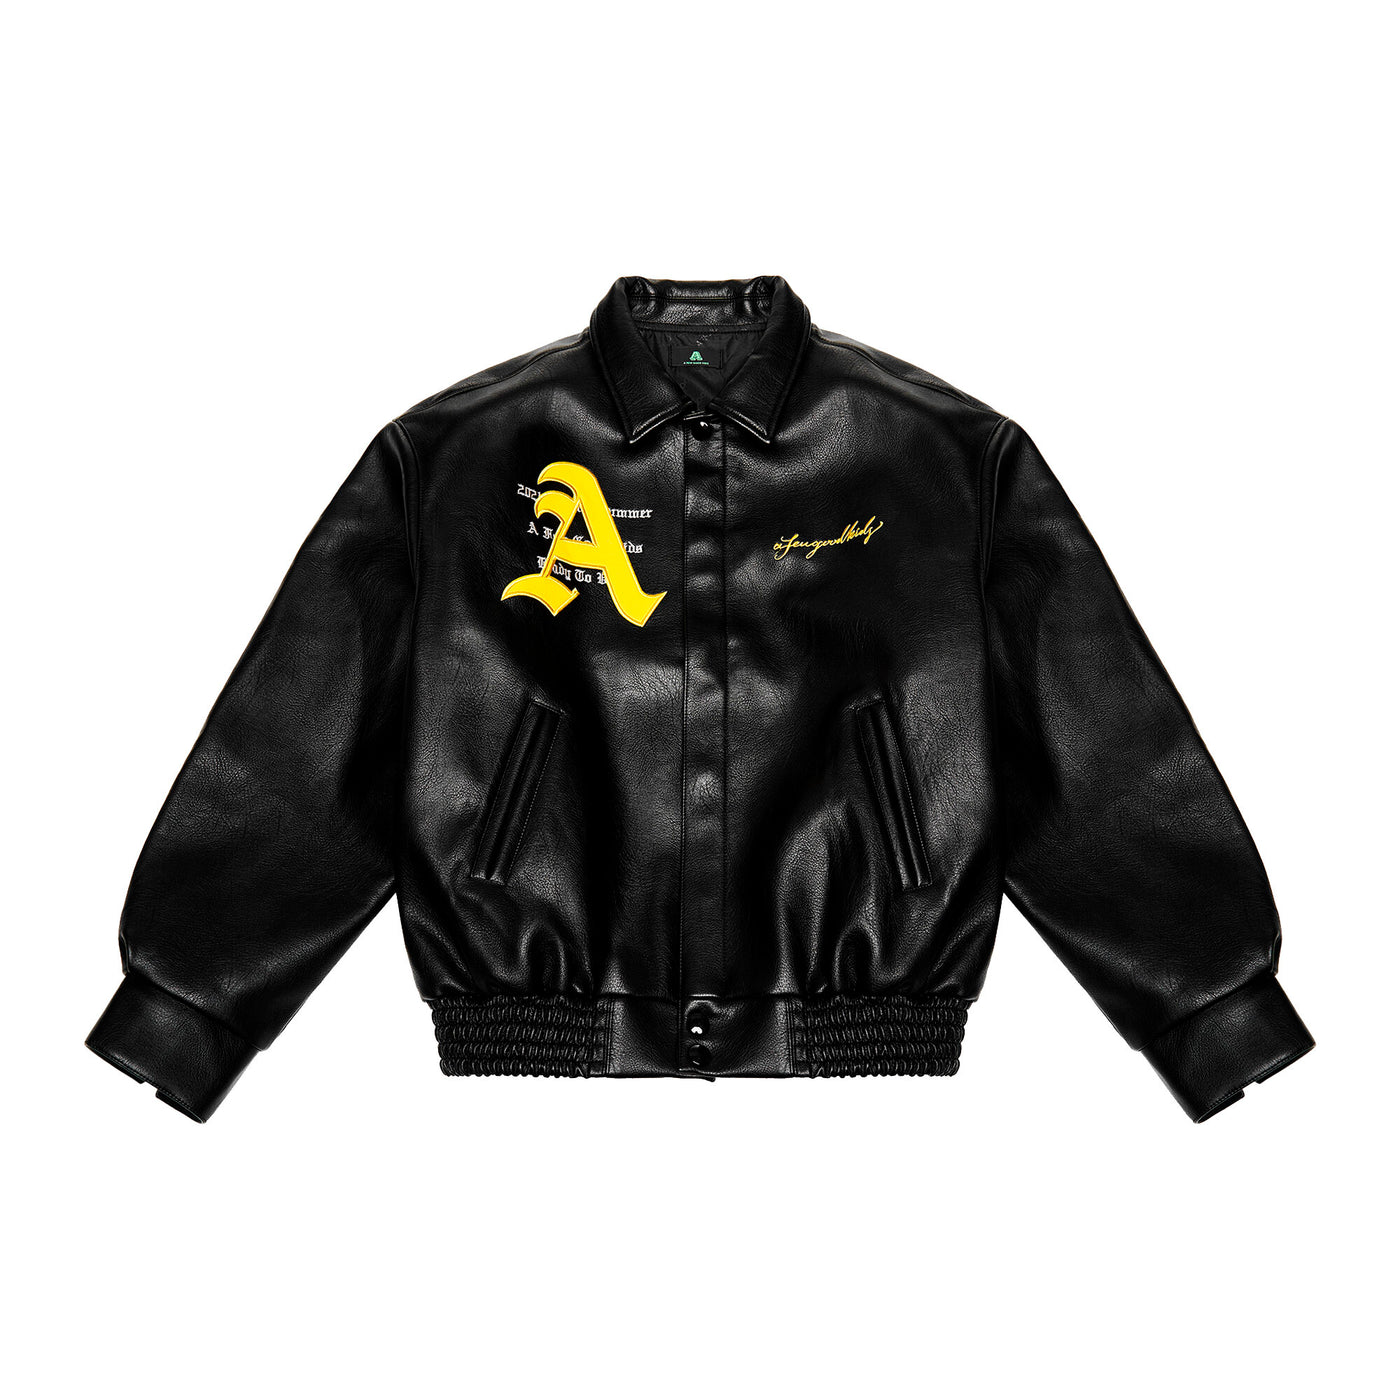 DONCARE (AFGK) "Racing Ferrari Leather Jacket" - Black